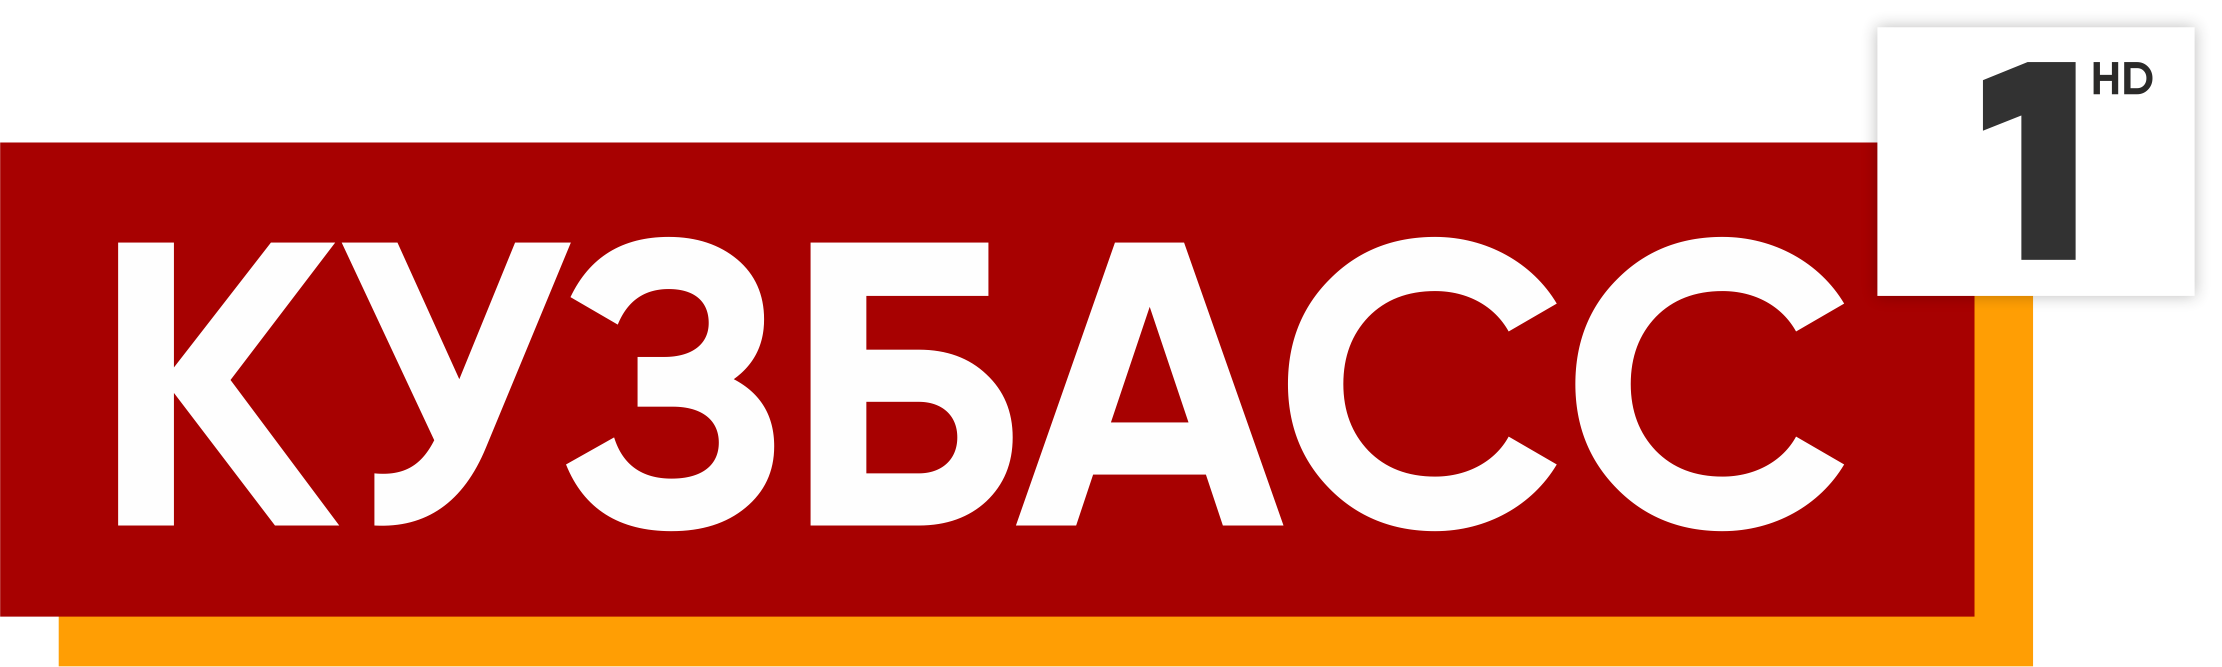 Прямой эфир 1 кемерово. Телеканал Кузбасс 1. Кузбасс первый логотип. Логотипы телеканалов. Кузбасс 1 TV logo.